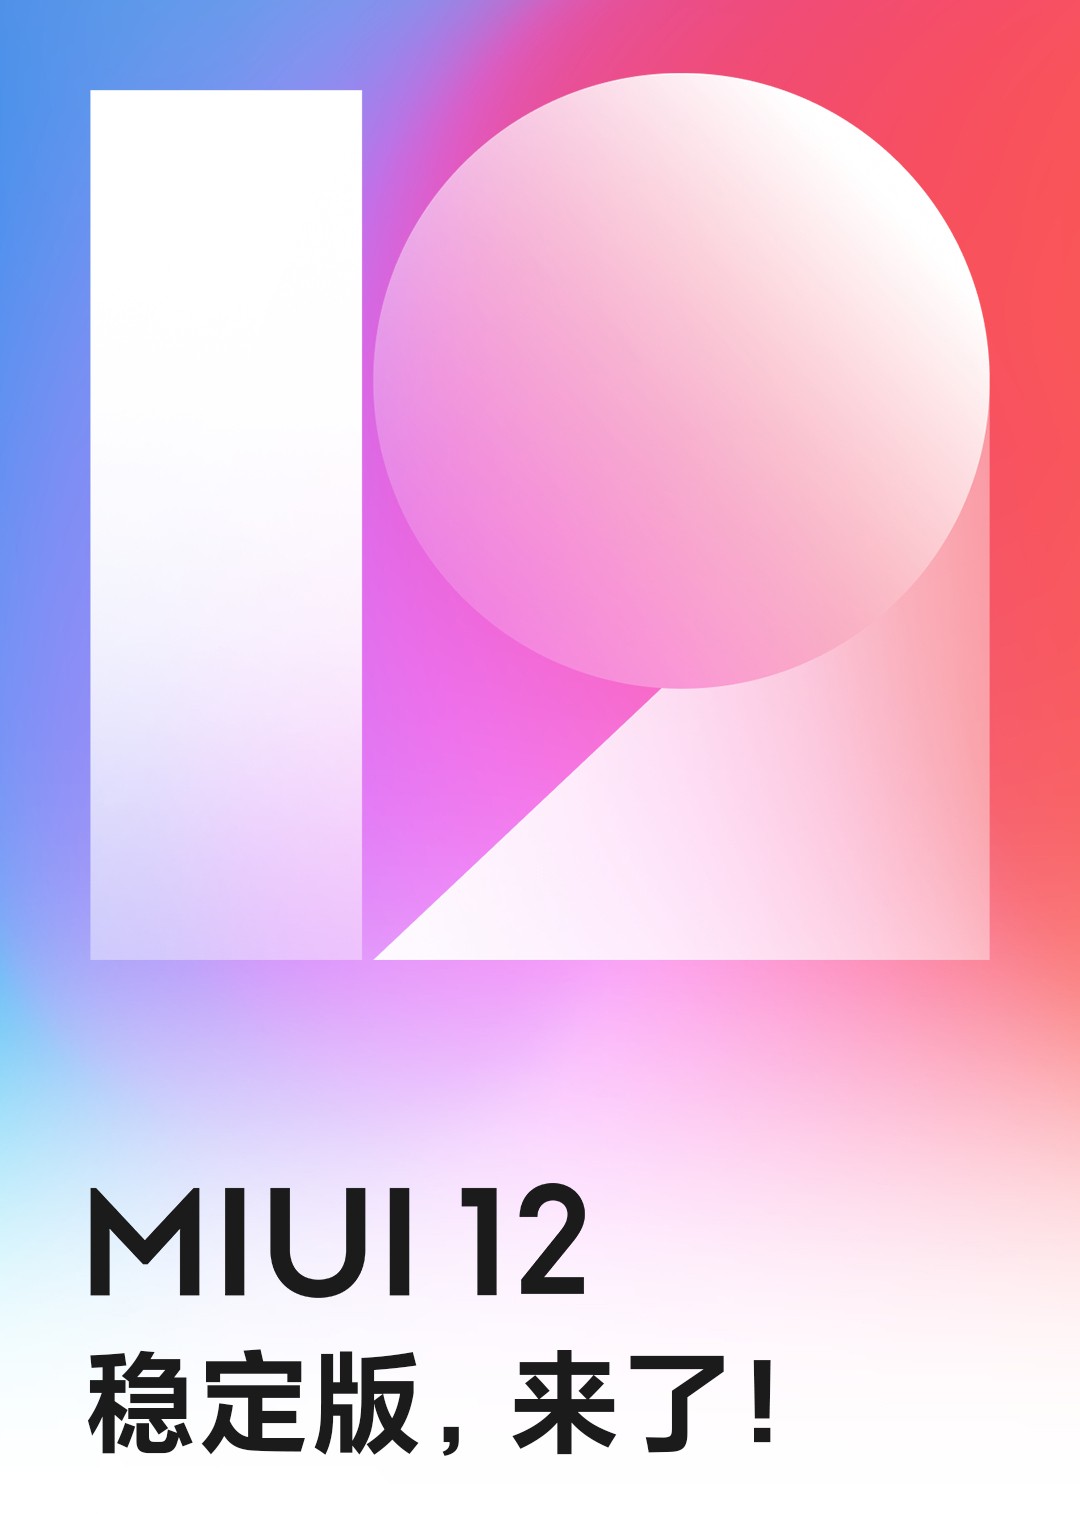 小米MIUI 12稳定版全量消息推送！第一批适用这种型号（附刷机包下载）